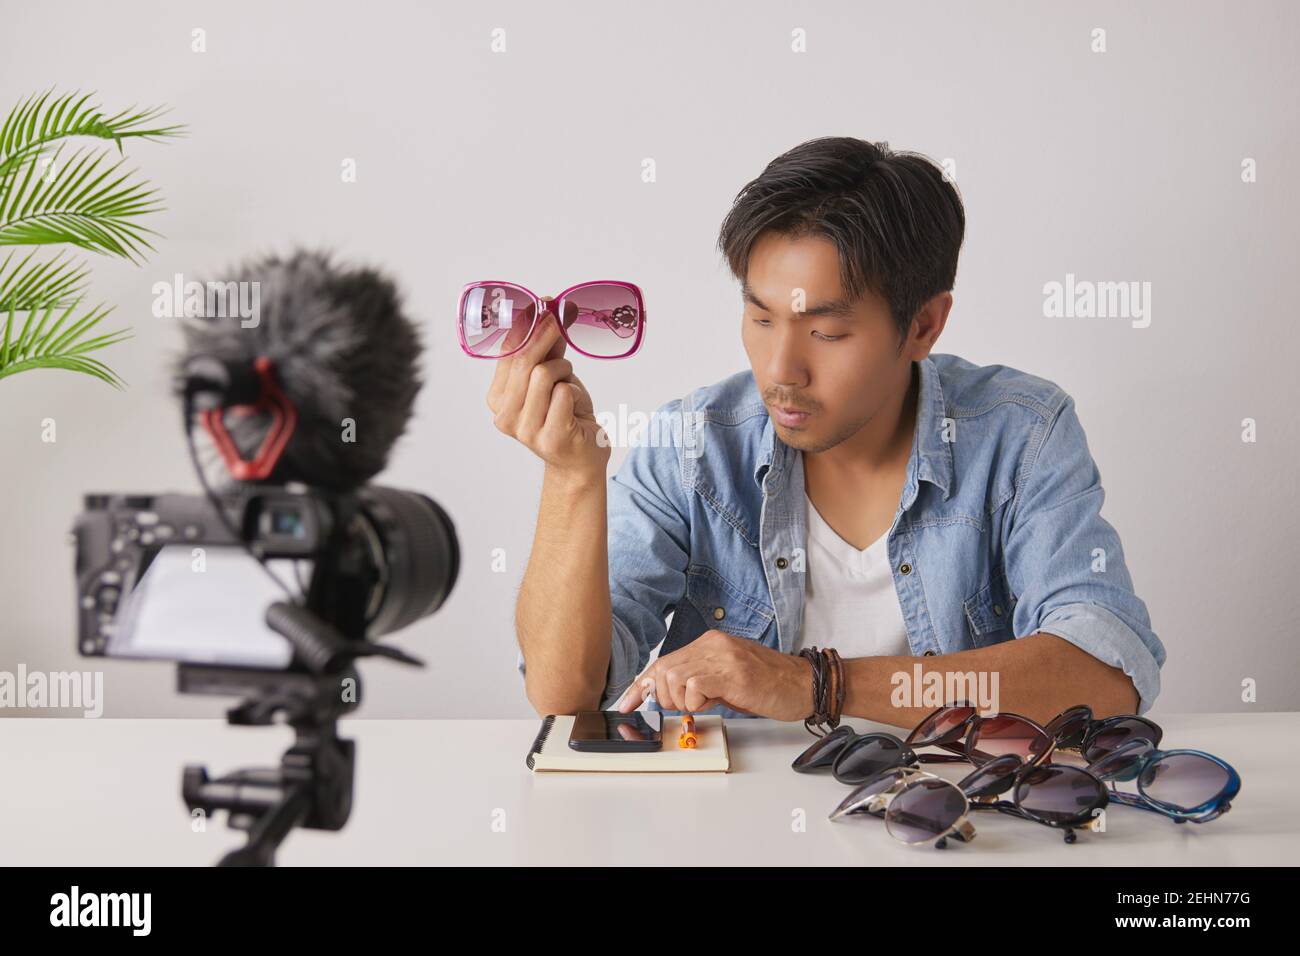 Asiatische Vlogger oder Blogger zeigen rosa Mode-Brille und Chat mit Kunden und Aufnahme Video. Freelancer Online Live Streaming mit Kunden über Soci Stockfoto